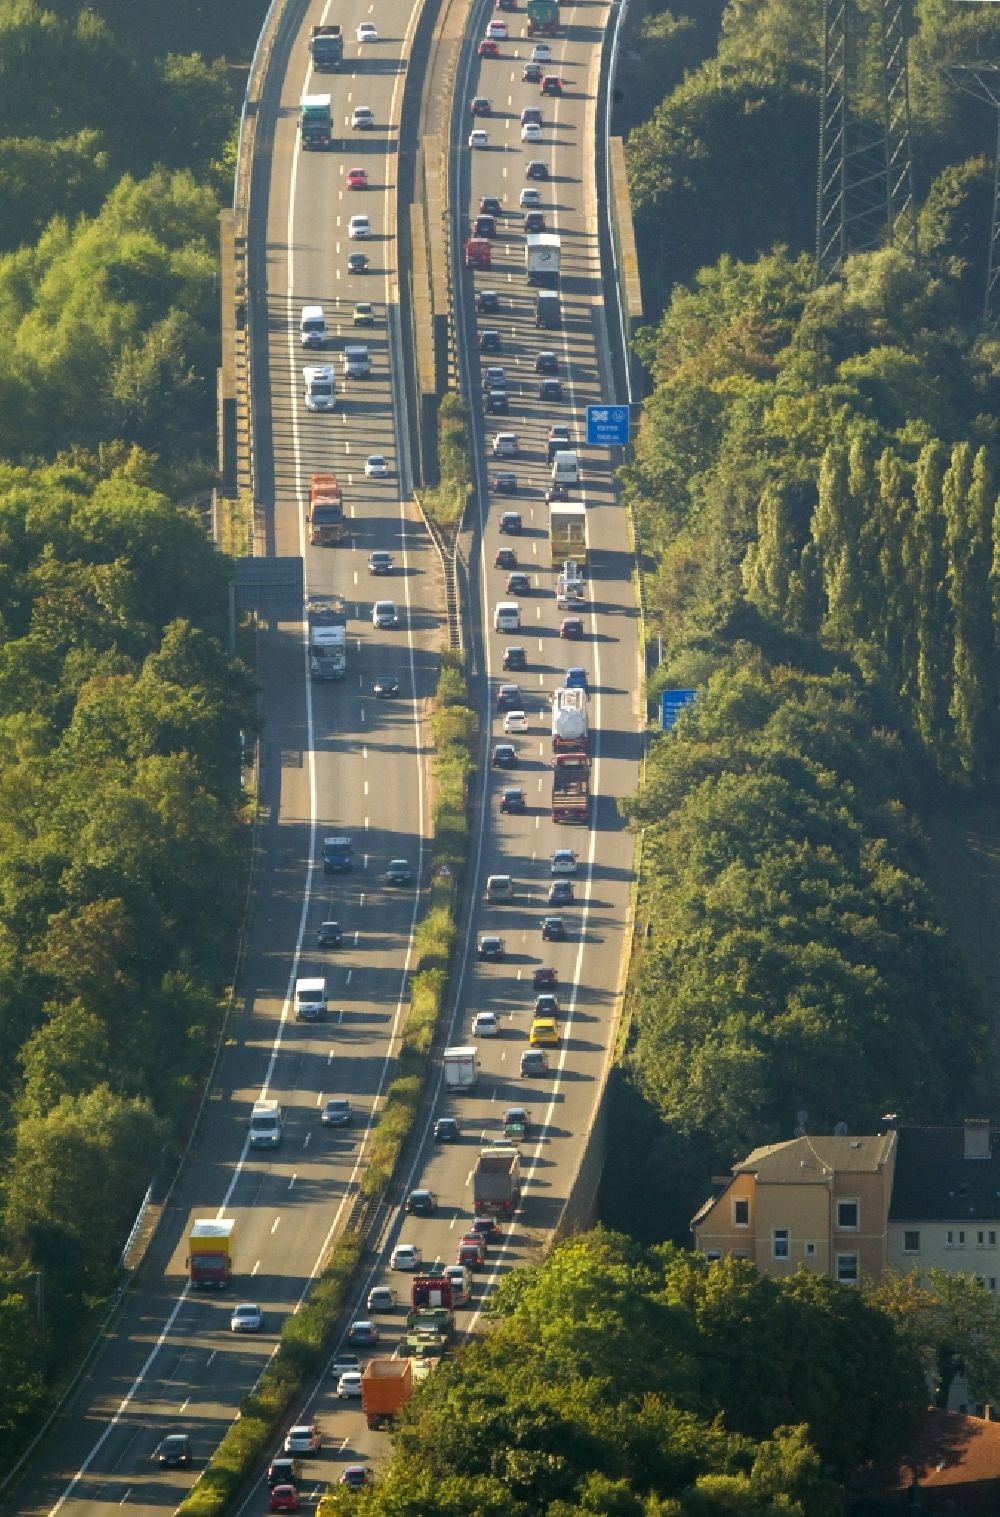 Luftbild Recklinghausen - Straßenverkehr Stau auf der Autobahn BAB A43 zum Autobahnkreuz A43 und A2 bei Recklinghausen im Bundesland Nordrhein-Westfalen